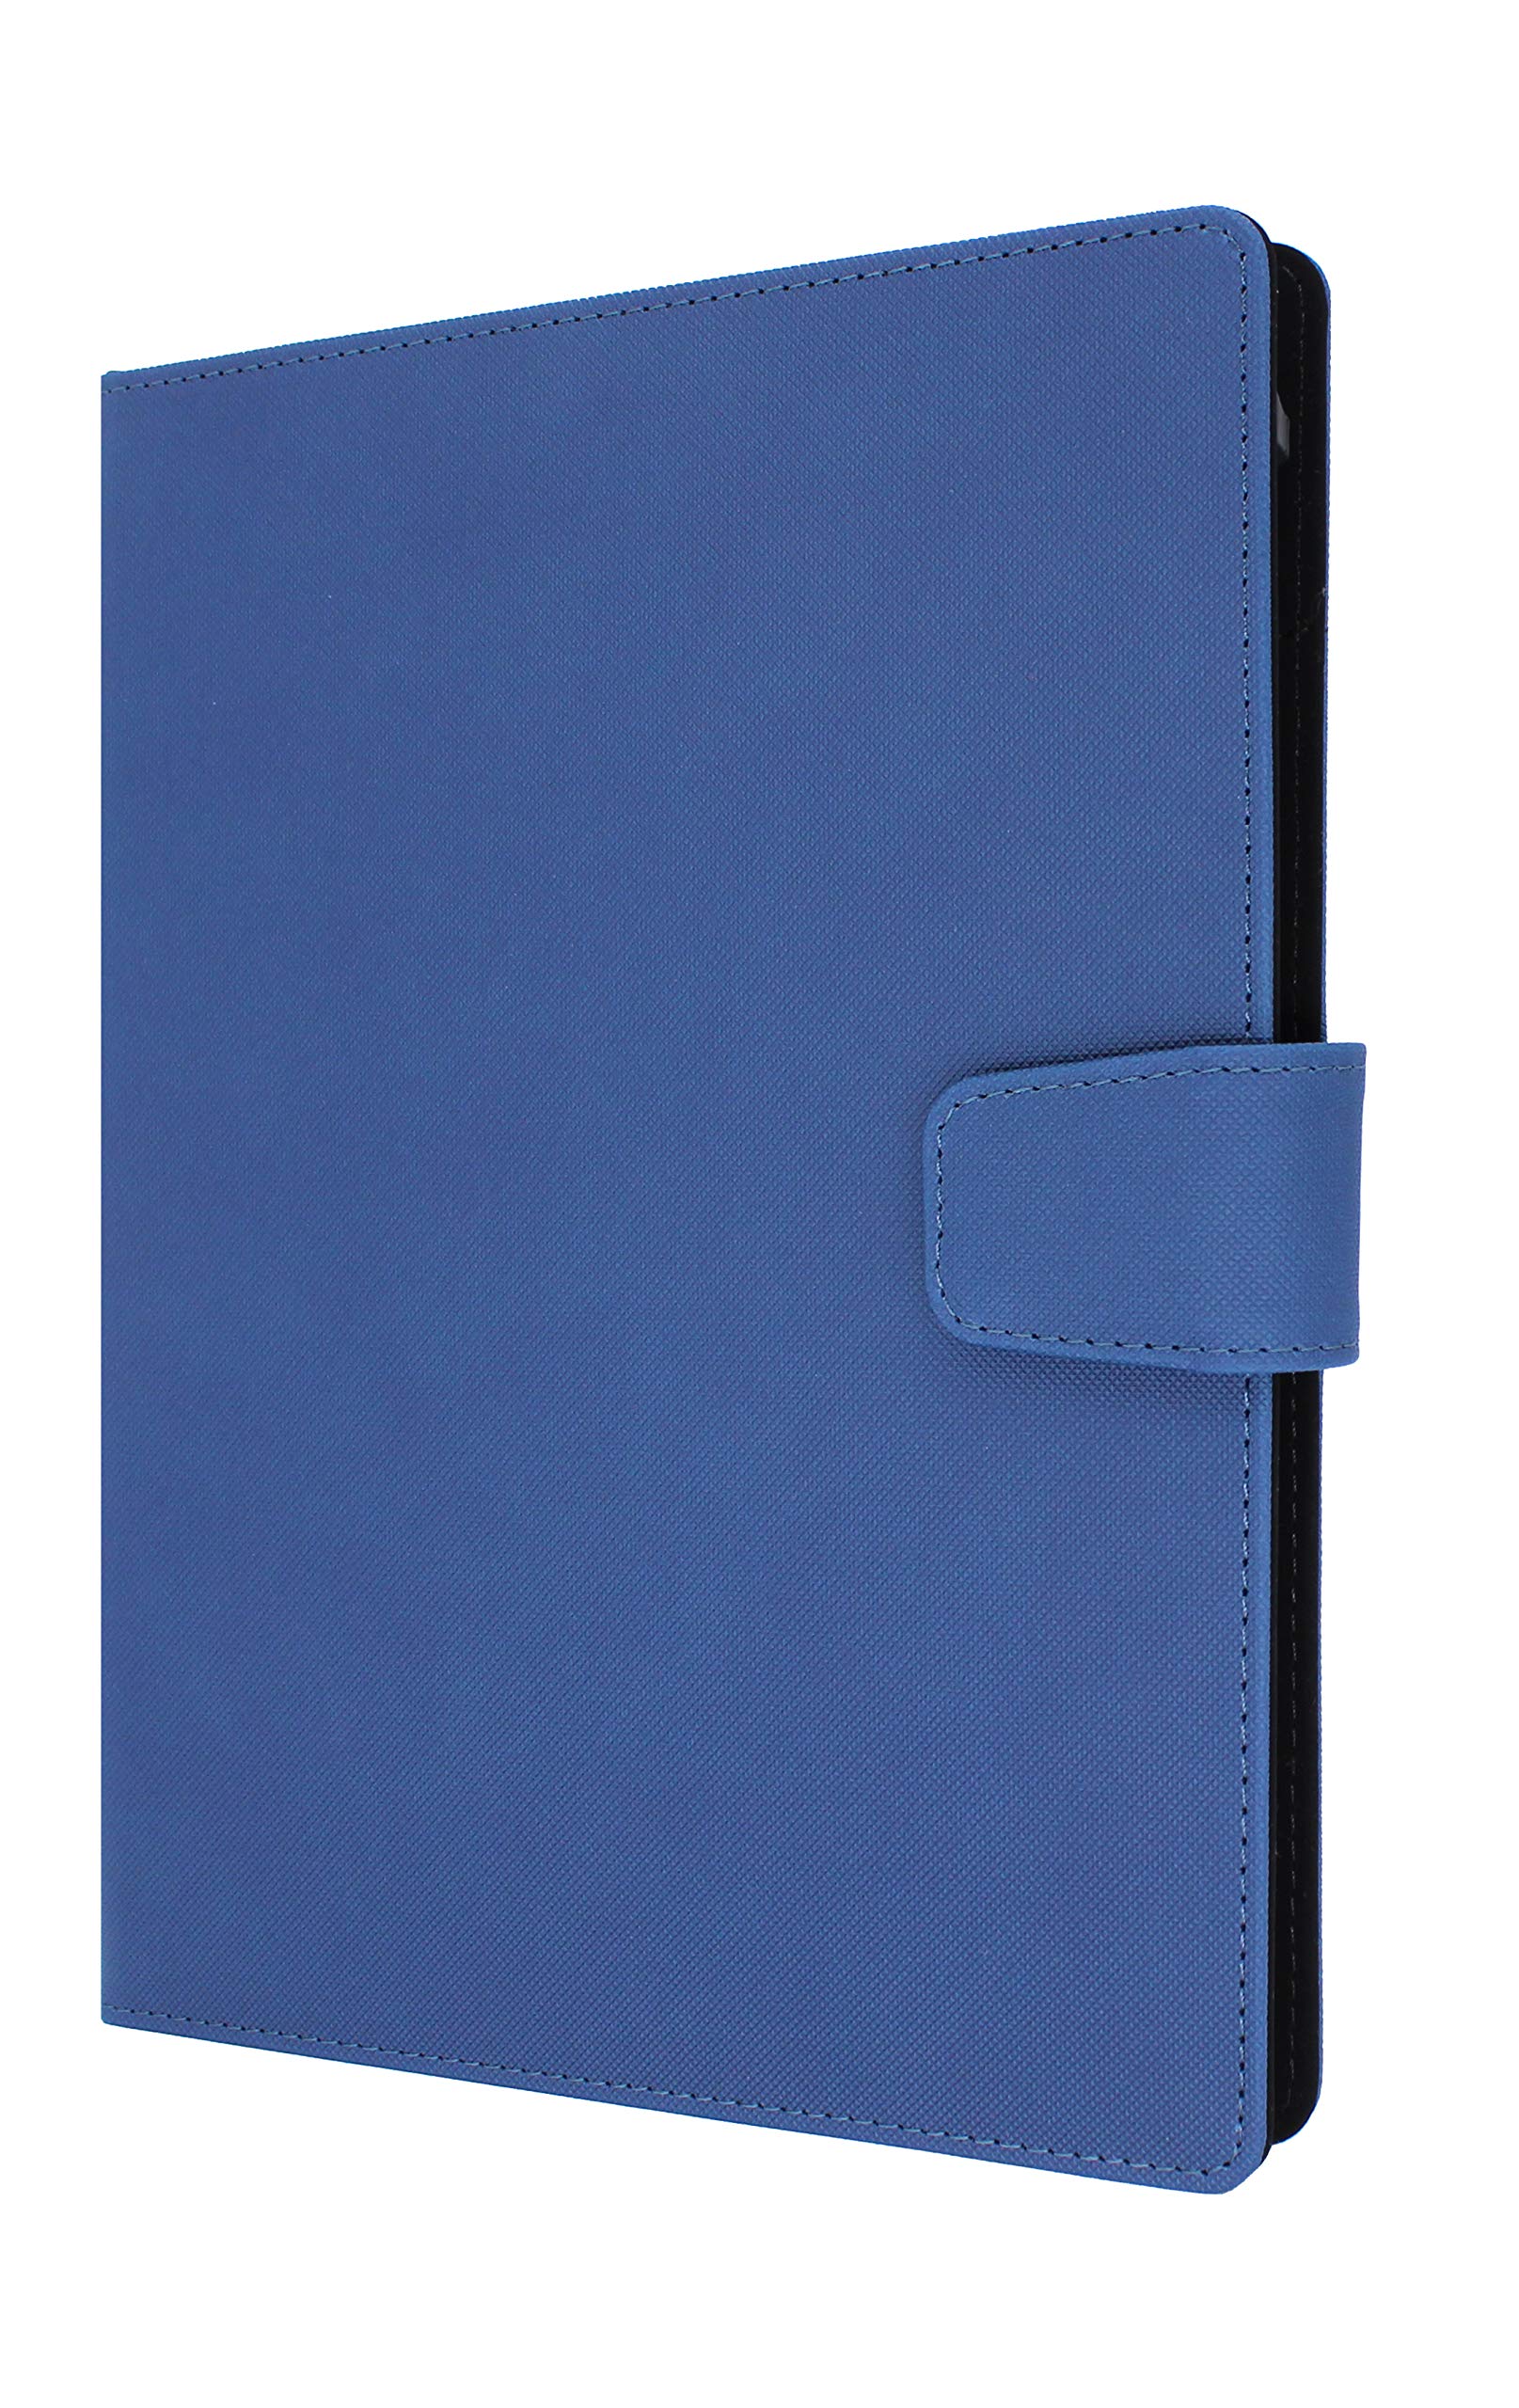 ELBE FU-001 Universal Schutzhülle für Tablets von 9 Zoll bis 10,8 Zoll, mit sicherem Magnetverschluss und klassischem Blau, kompatibel mit Allen unten aufgeführten Modellen